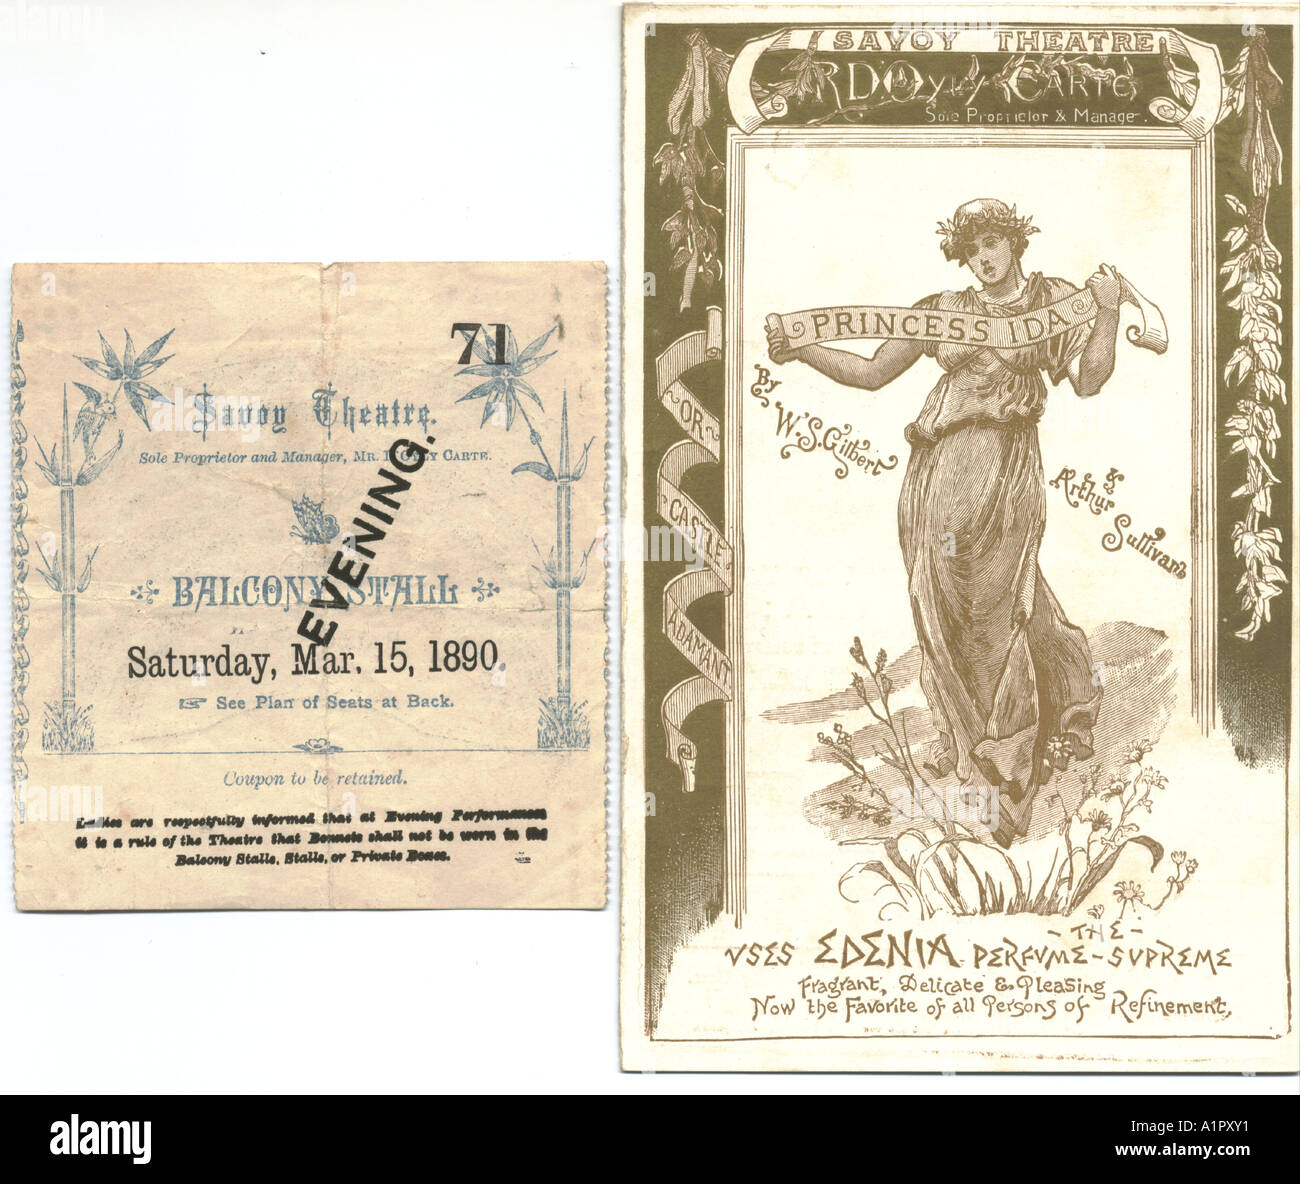 Savoy Theatre, Londra, programma per la principessa Ida e biglietto 1890 Foto Stock